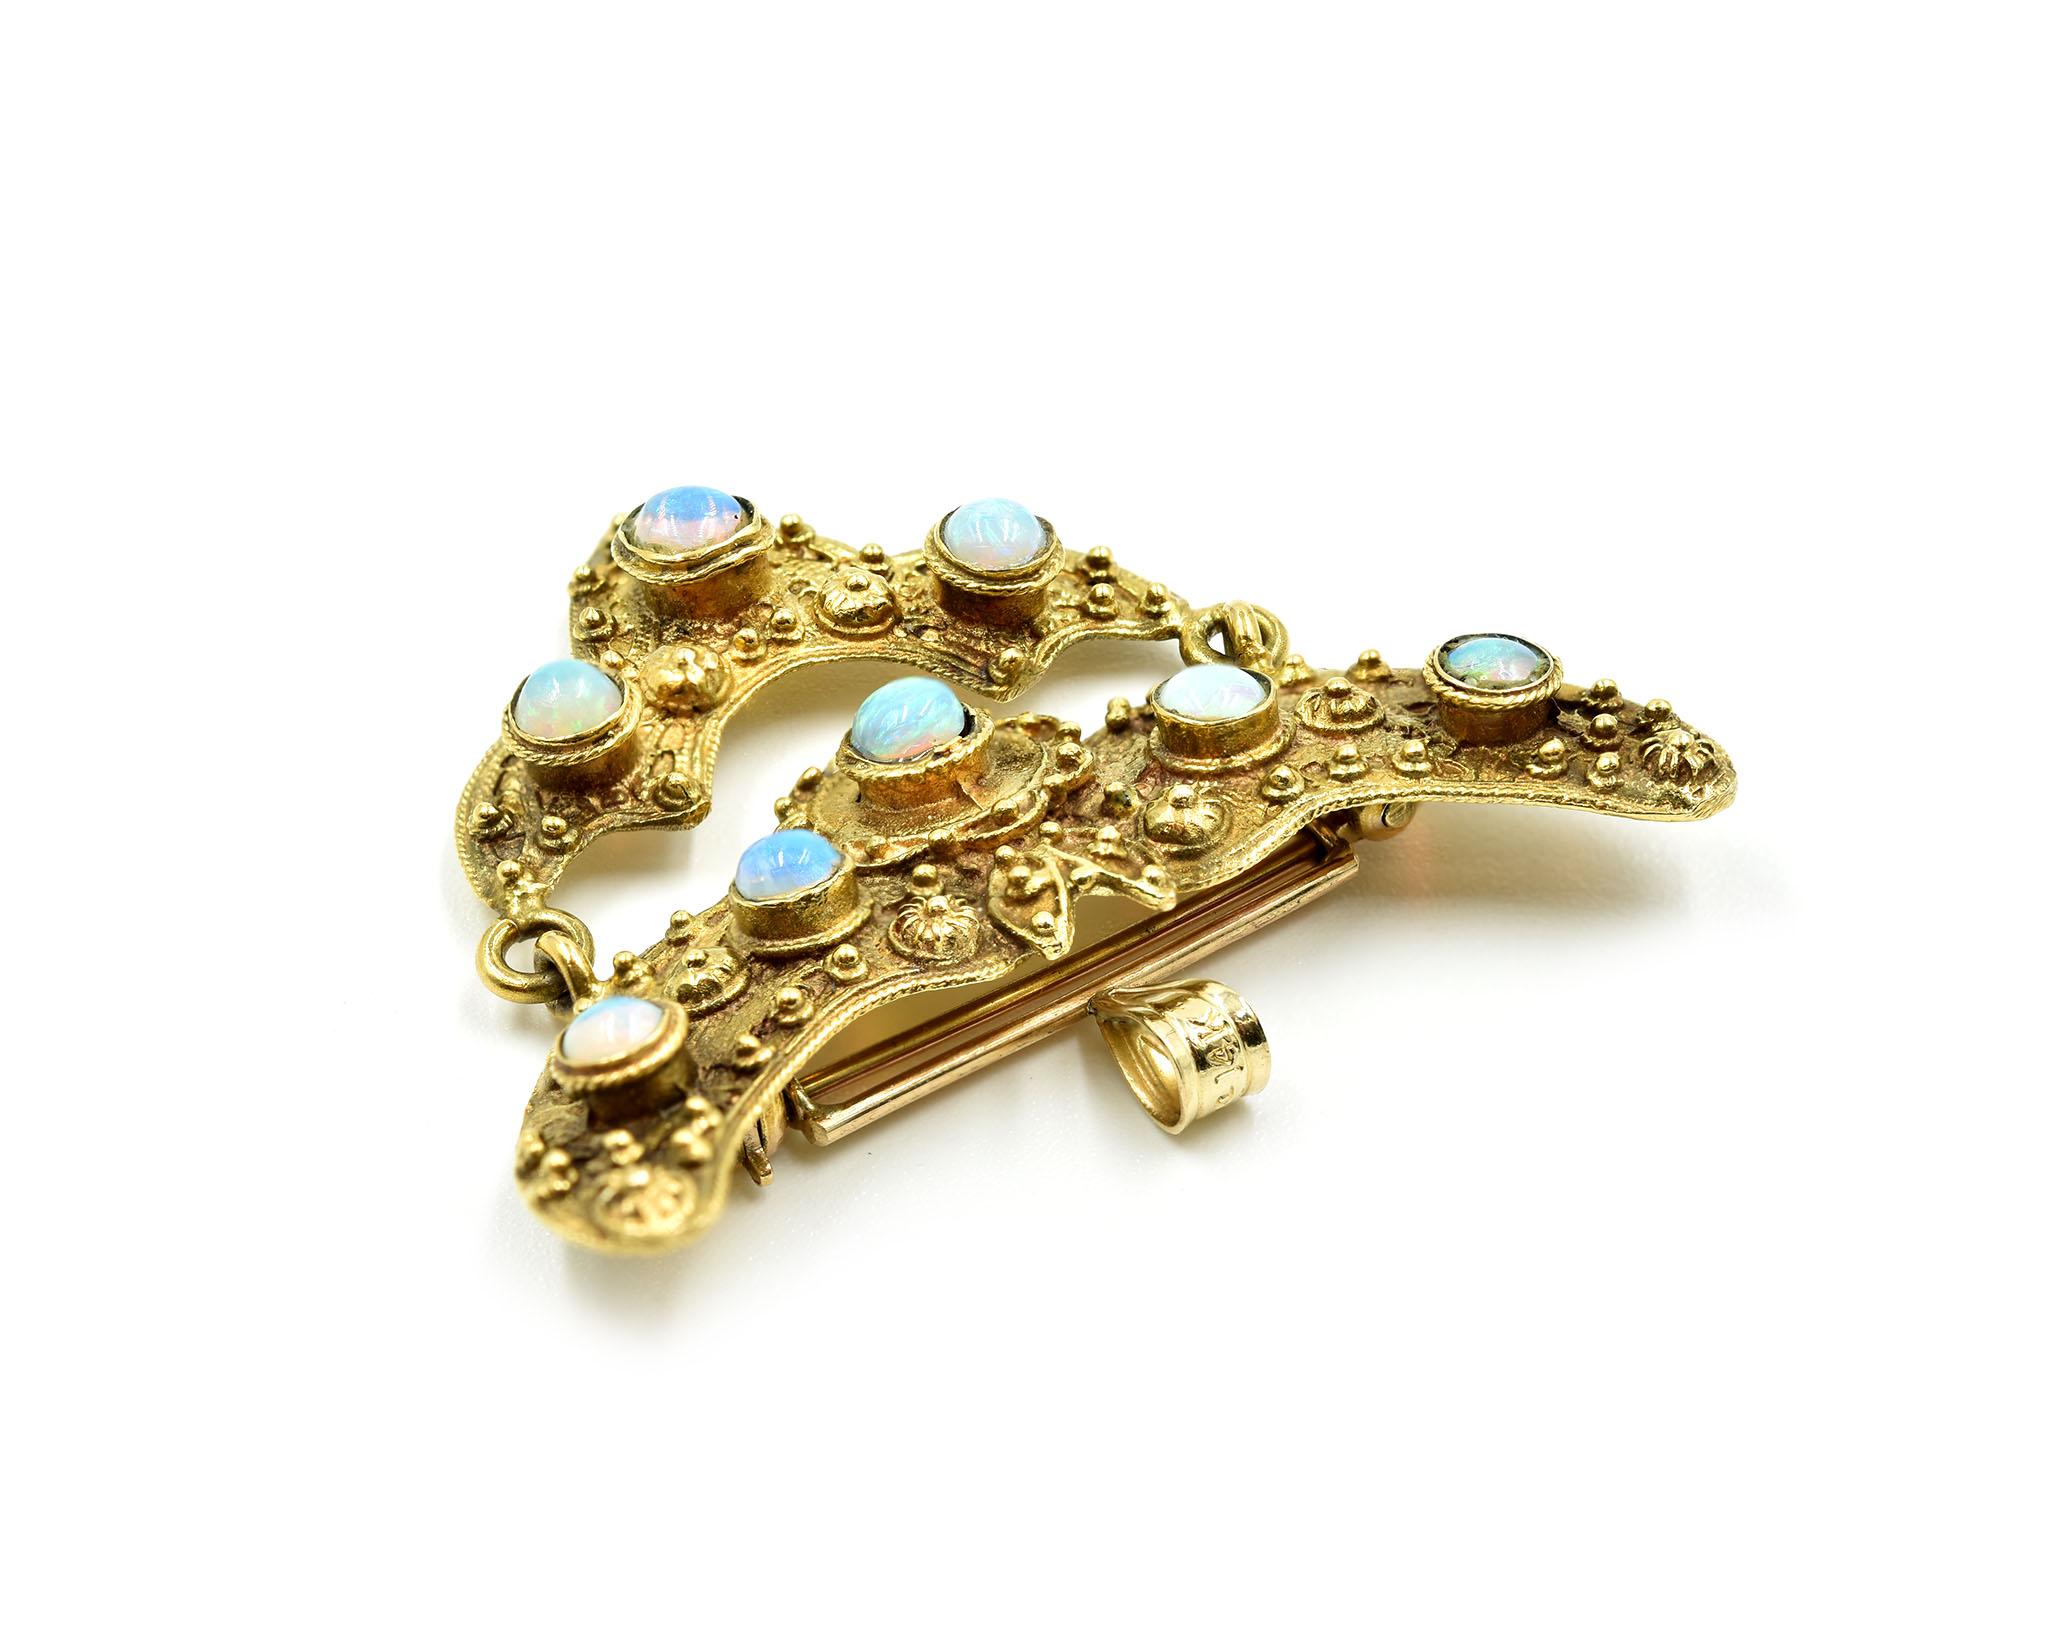 Women's Vintage 14 Karat Yellow Gold Pin Set with Opal Gemstones